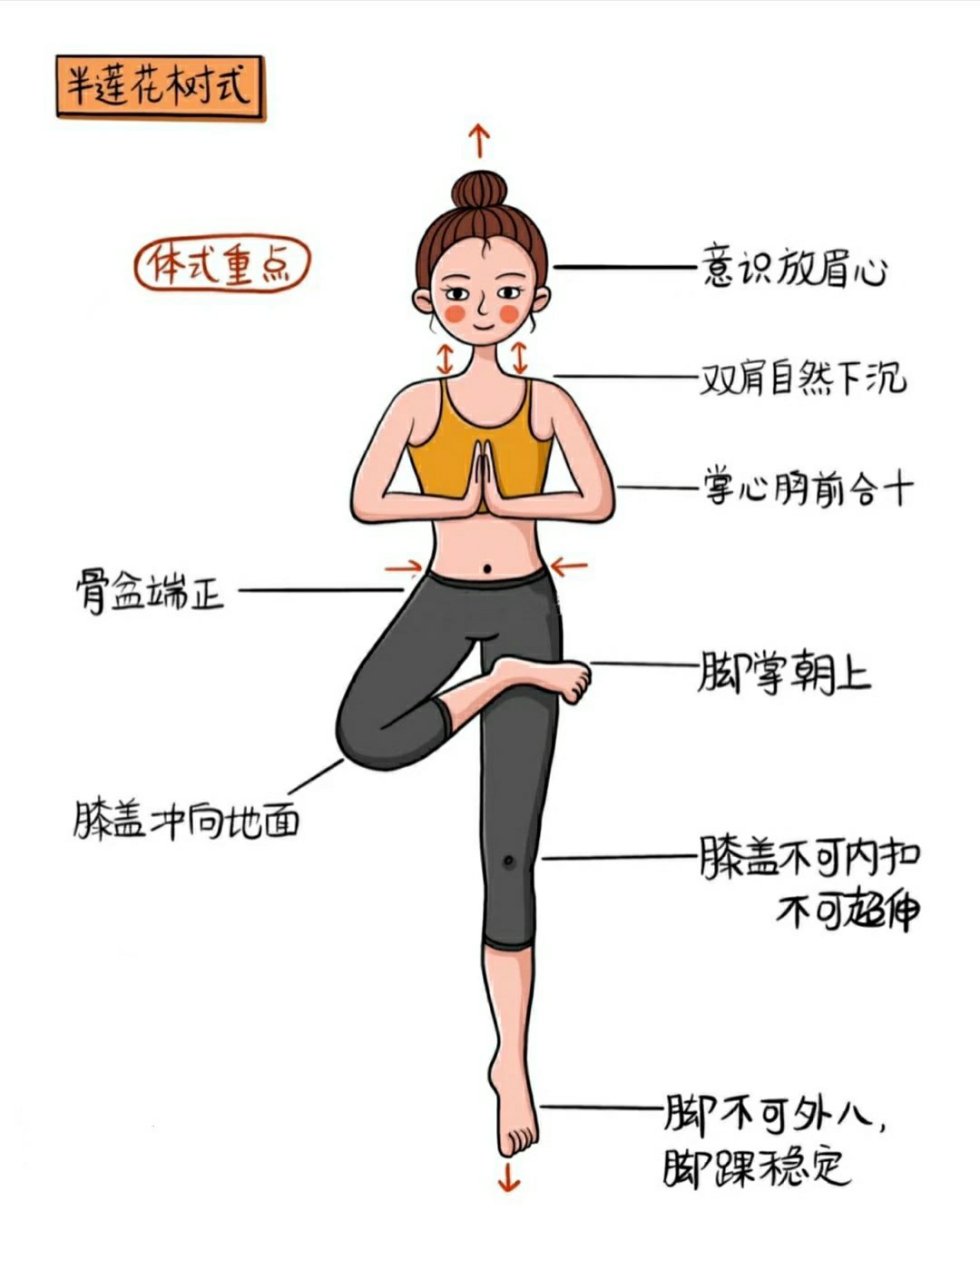 【瑜伽郭教练分享体式】半莲花树式 功效:加强大小腿,臀部等肌肉